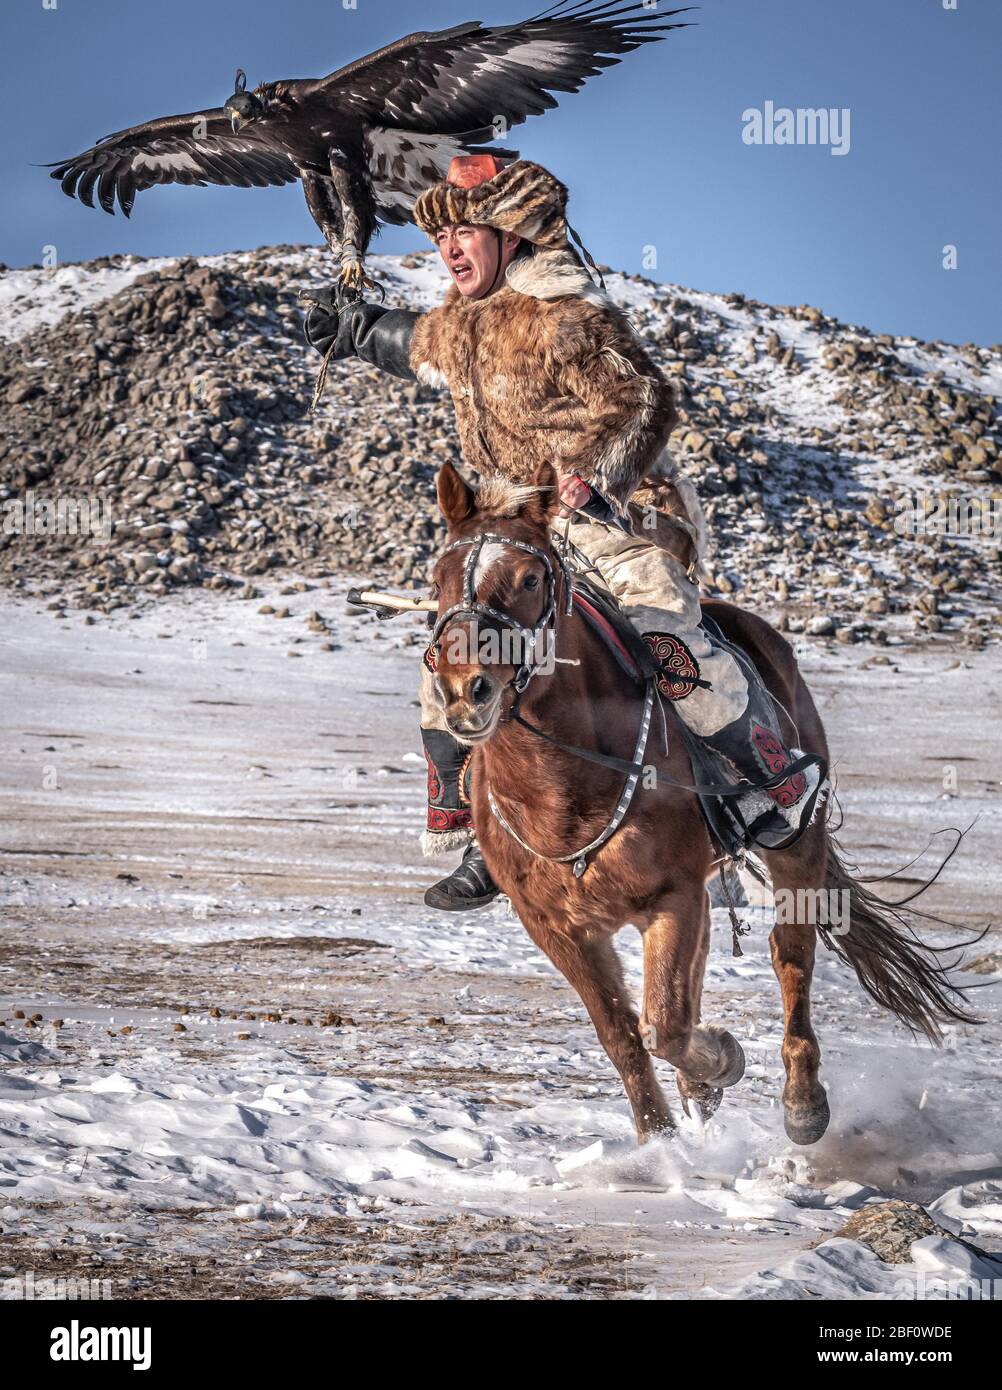 Chasseur d'aigles mongol, le kazakh fait du cheval avec un aigle formé en hiver, province de Bayan-Olgii, Mongolie Banque D'Images